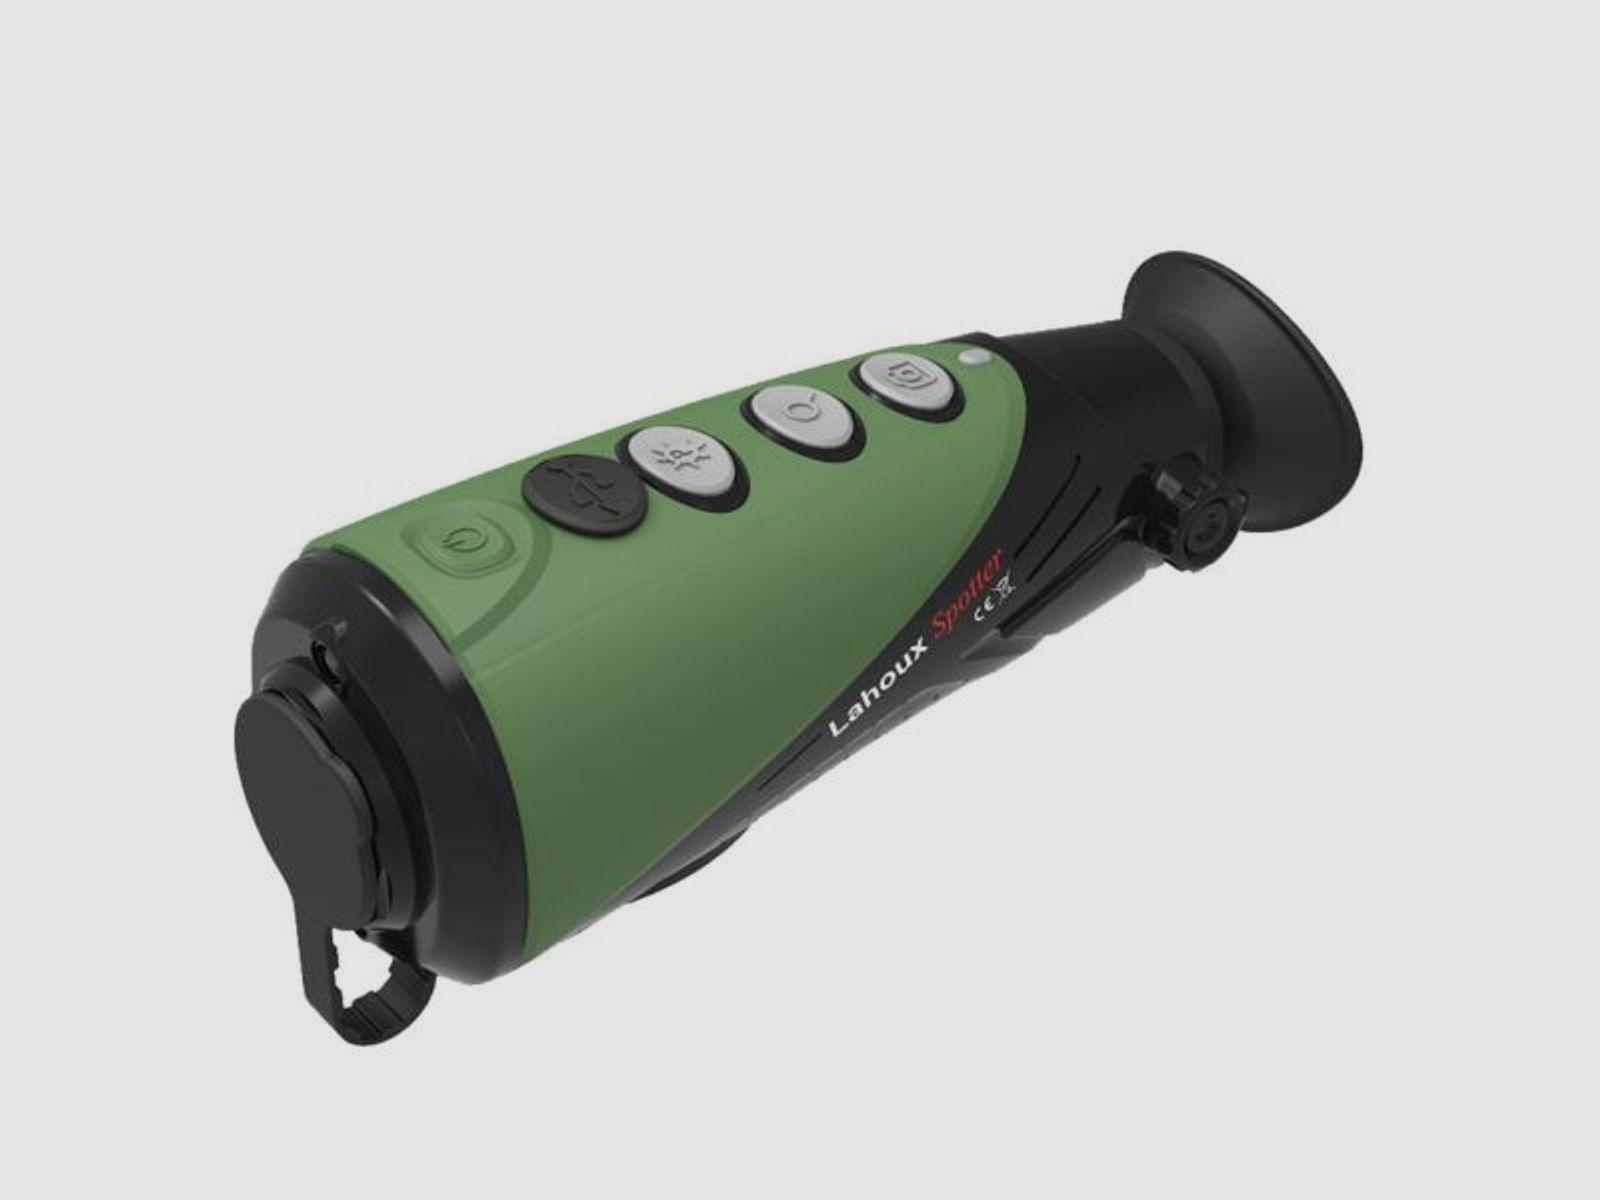 Lahoux Optics Wärmebild-Kamera Spotter Pro V (19mm) Monokular